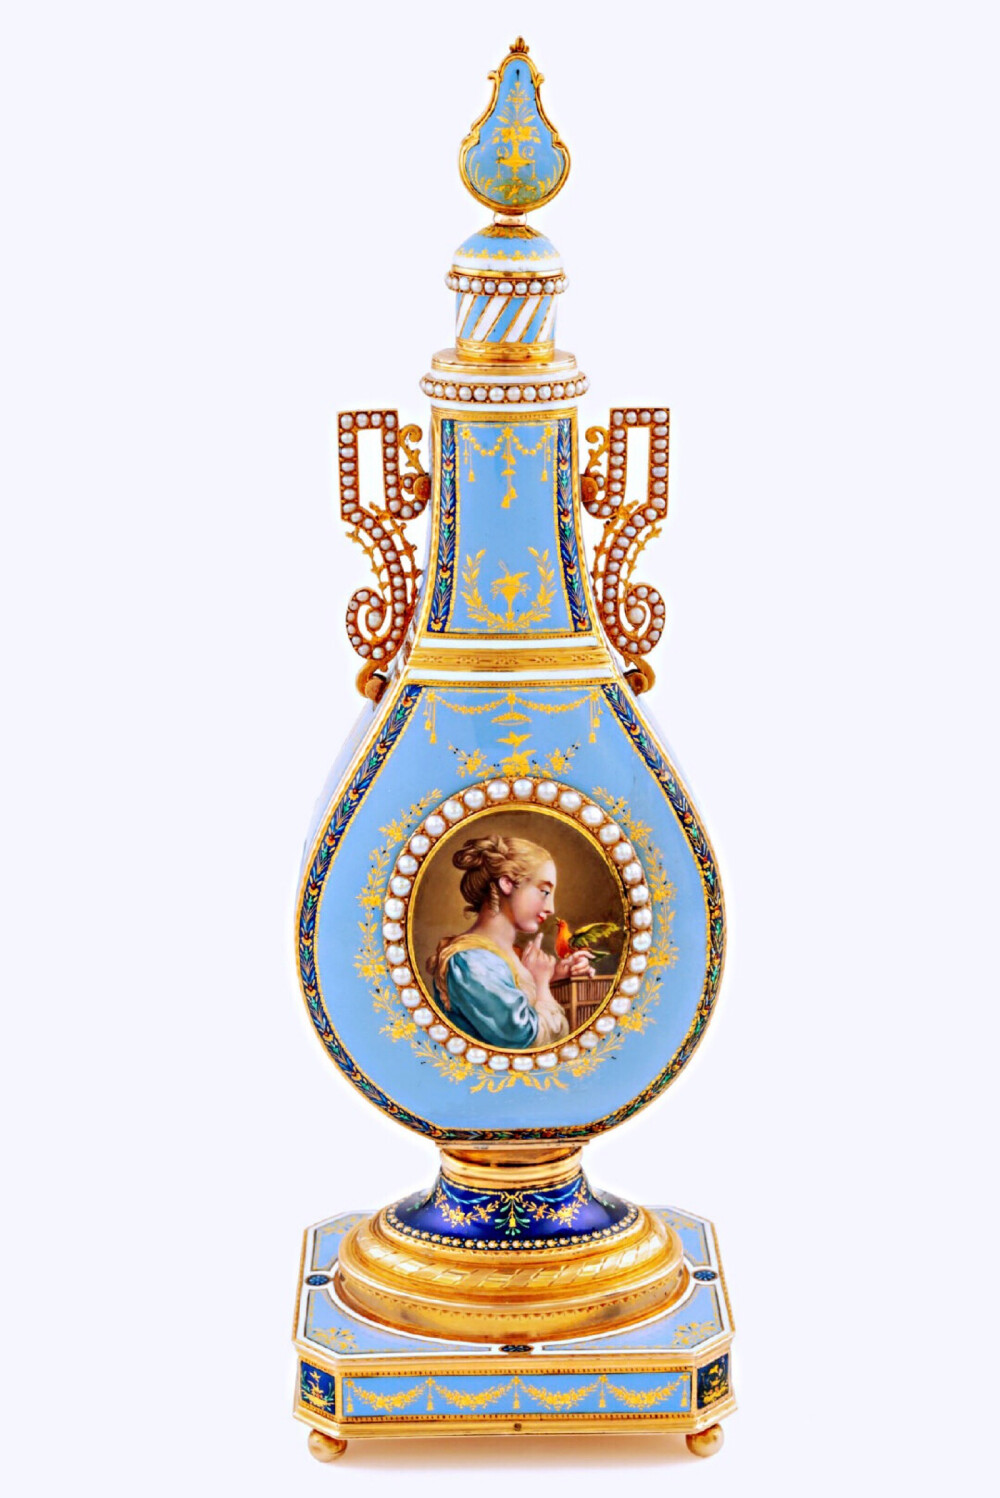 制作于18世纪末的法国，外形是香水瓶，一面是时计，一面是源自布歇的珐琅画。画中女士逗弄着一只正在唱歌的小鸟，而打开这面珐琅画，内里带有鸣鸟音乐盒的功能。 ​​​